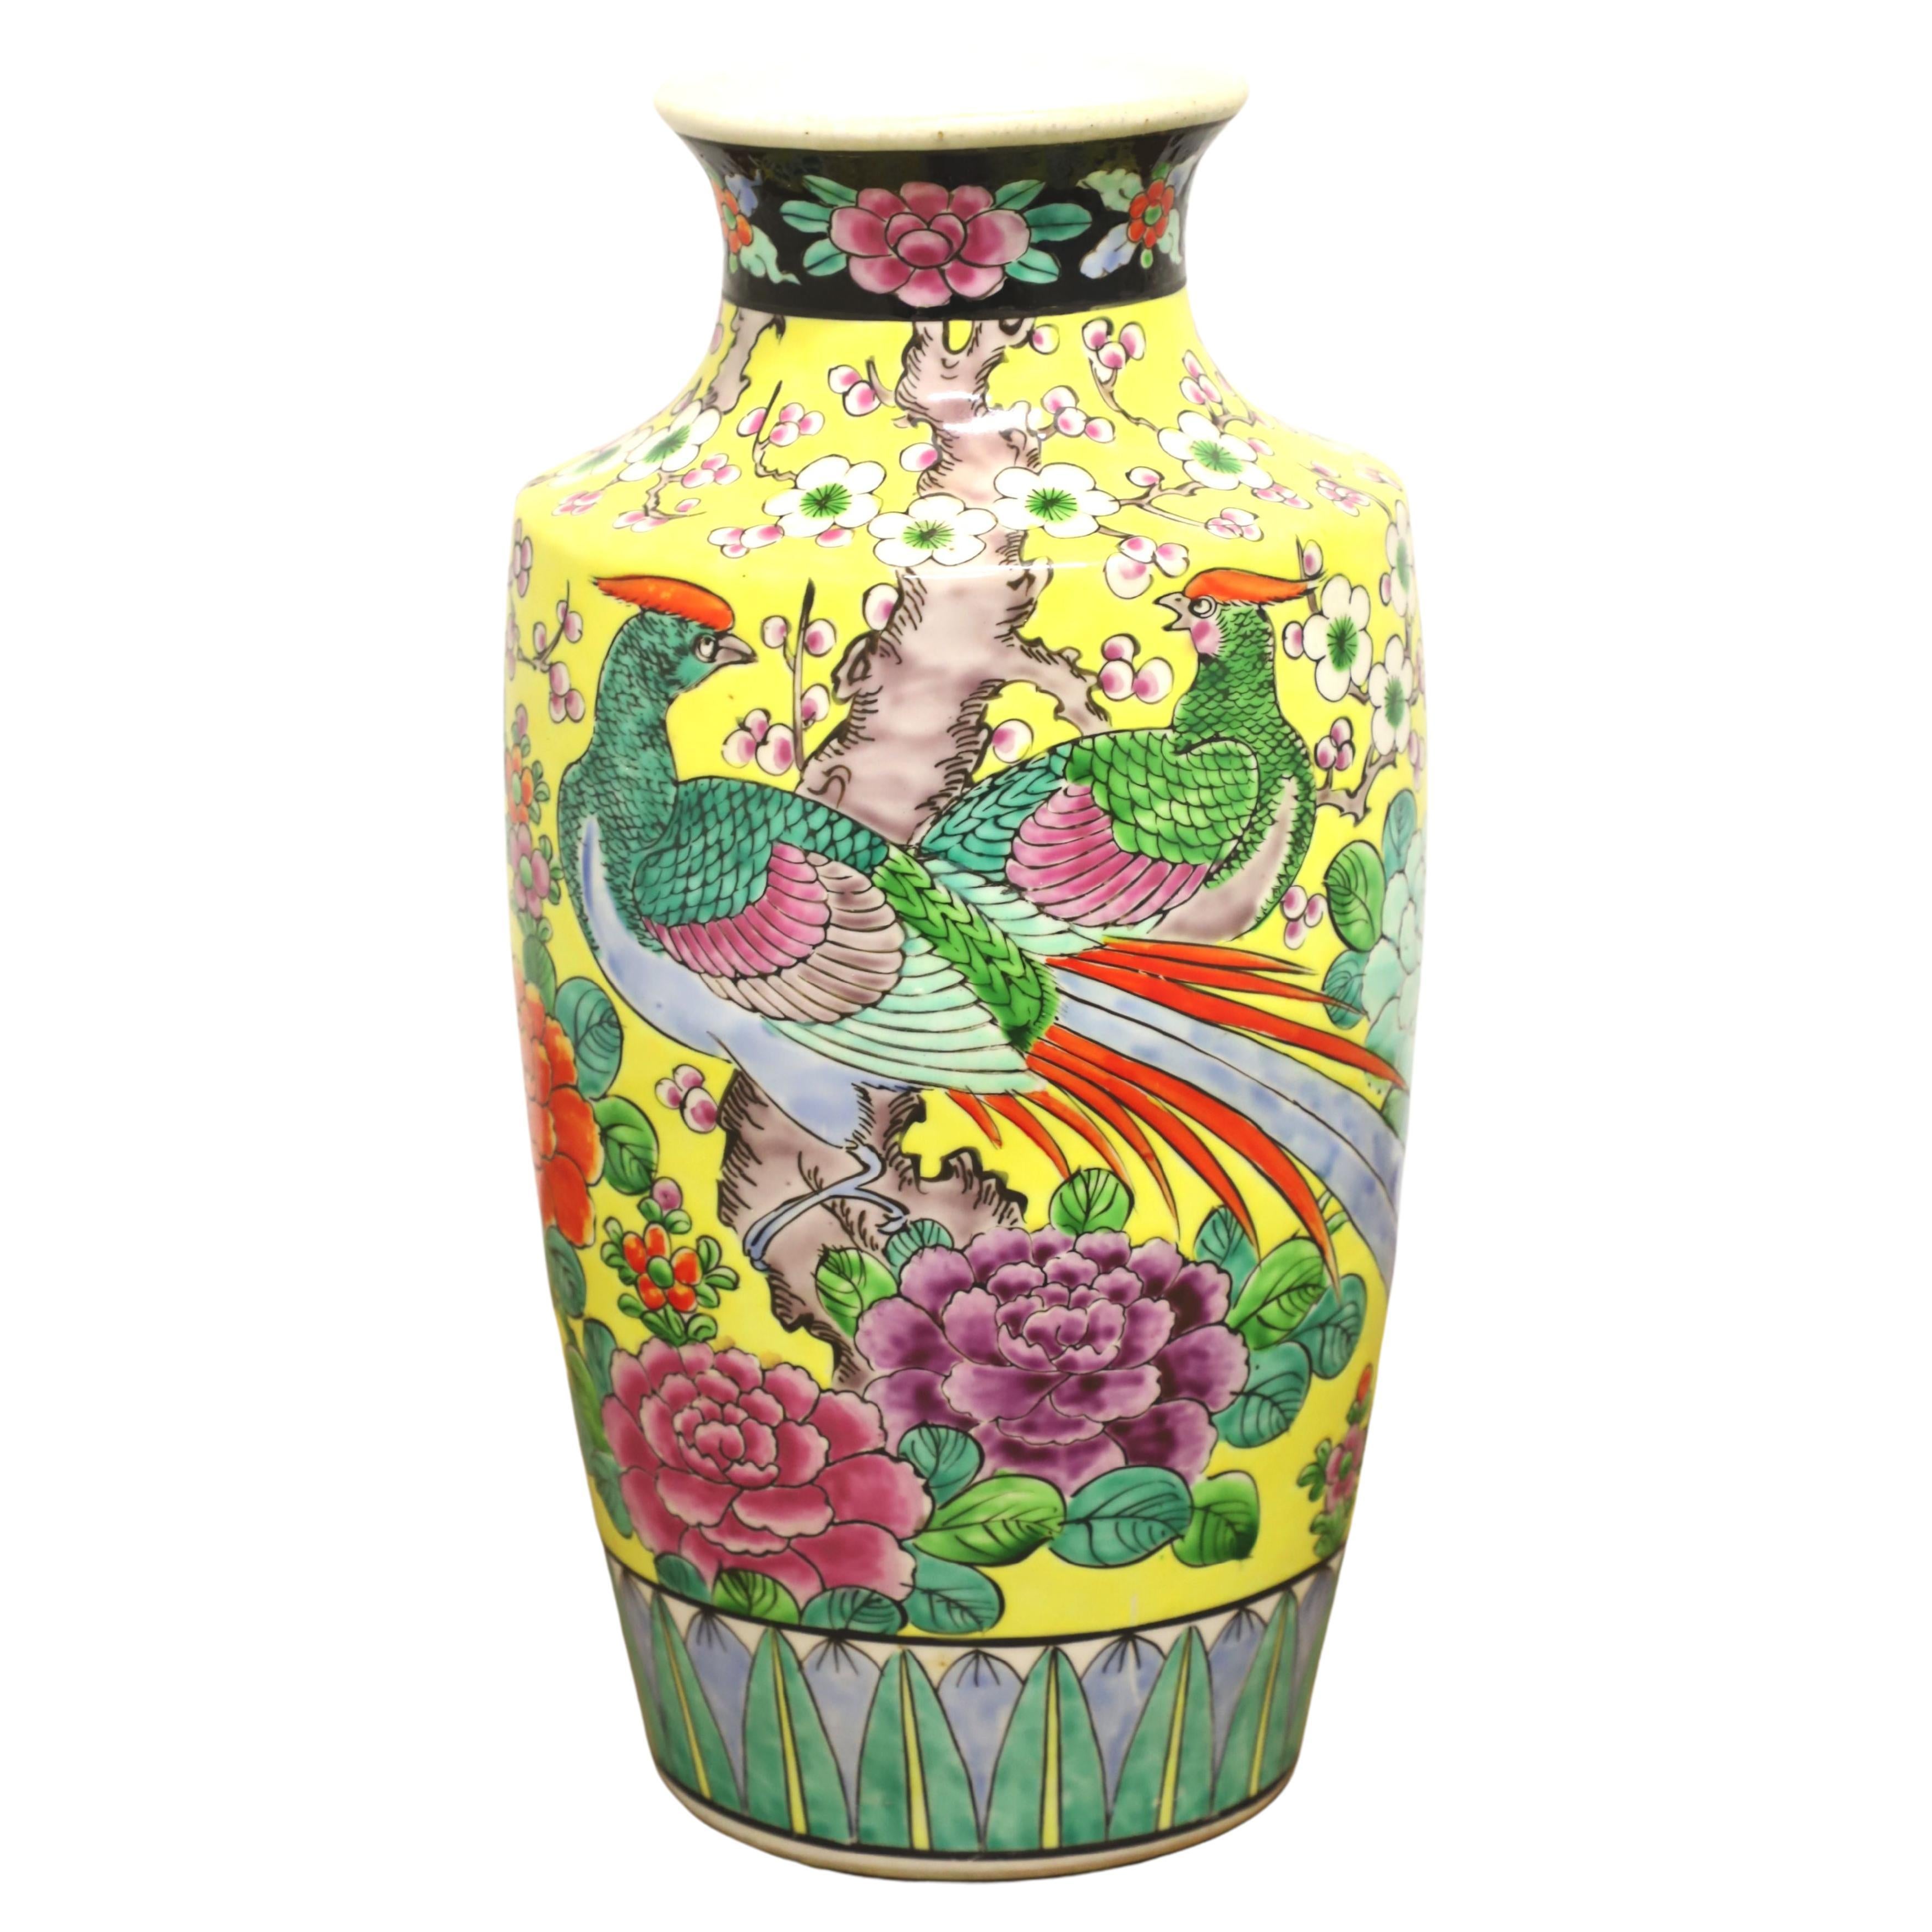 1960's Yellow/Green Japanese chinoiserie Ceramic Vase